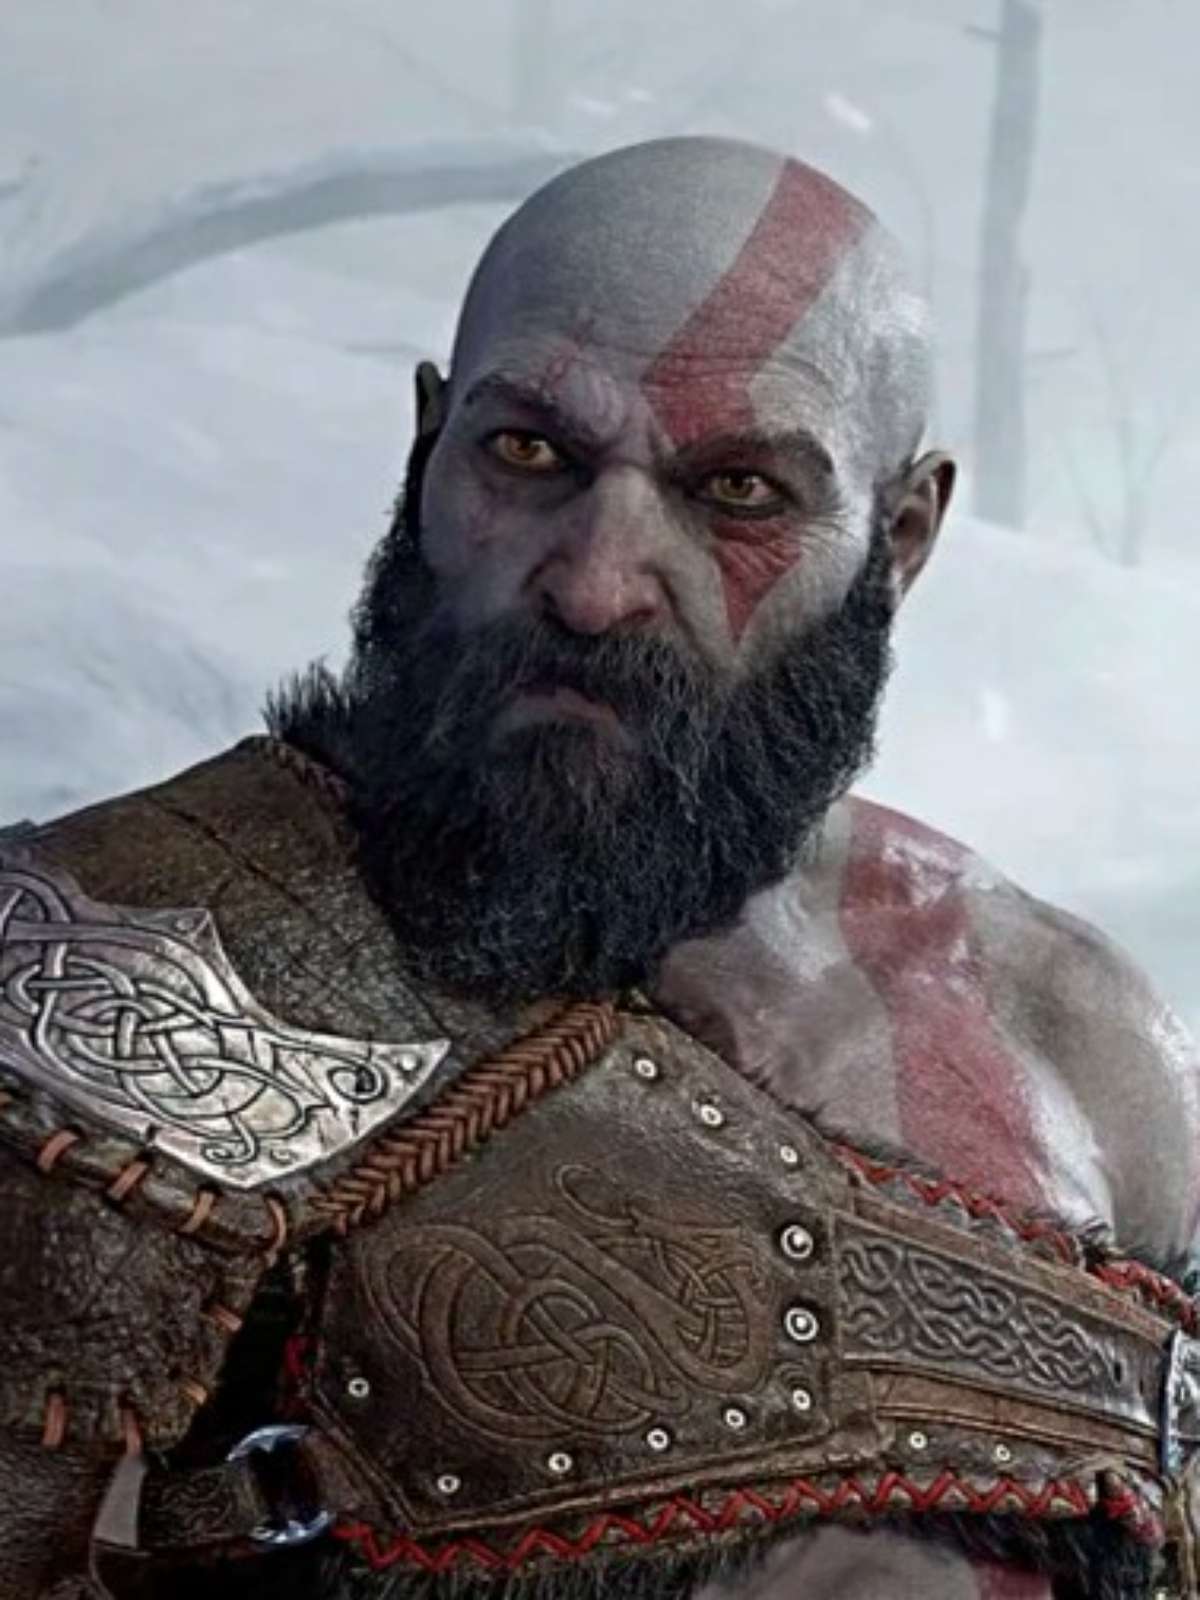 God of War Ragnarök vendeu mais de 5 milhões de unidades - Record